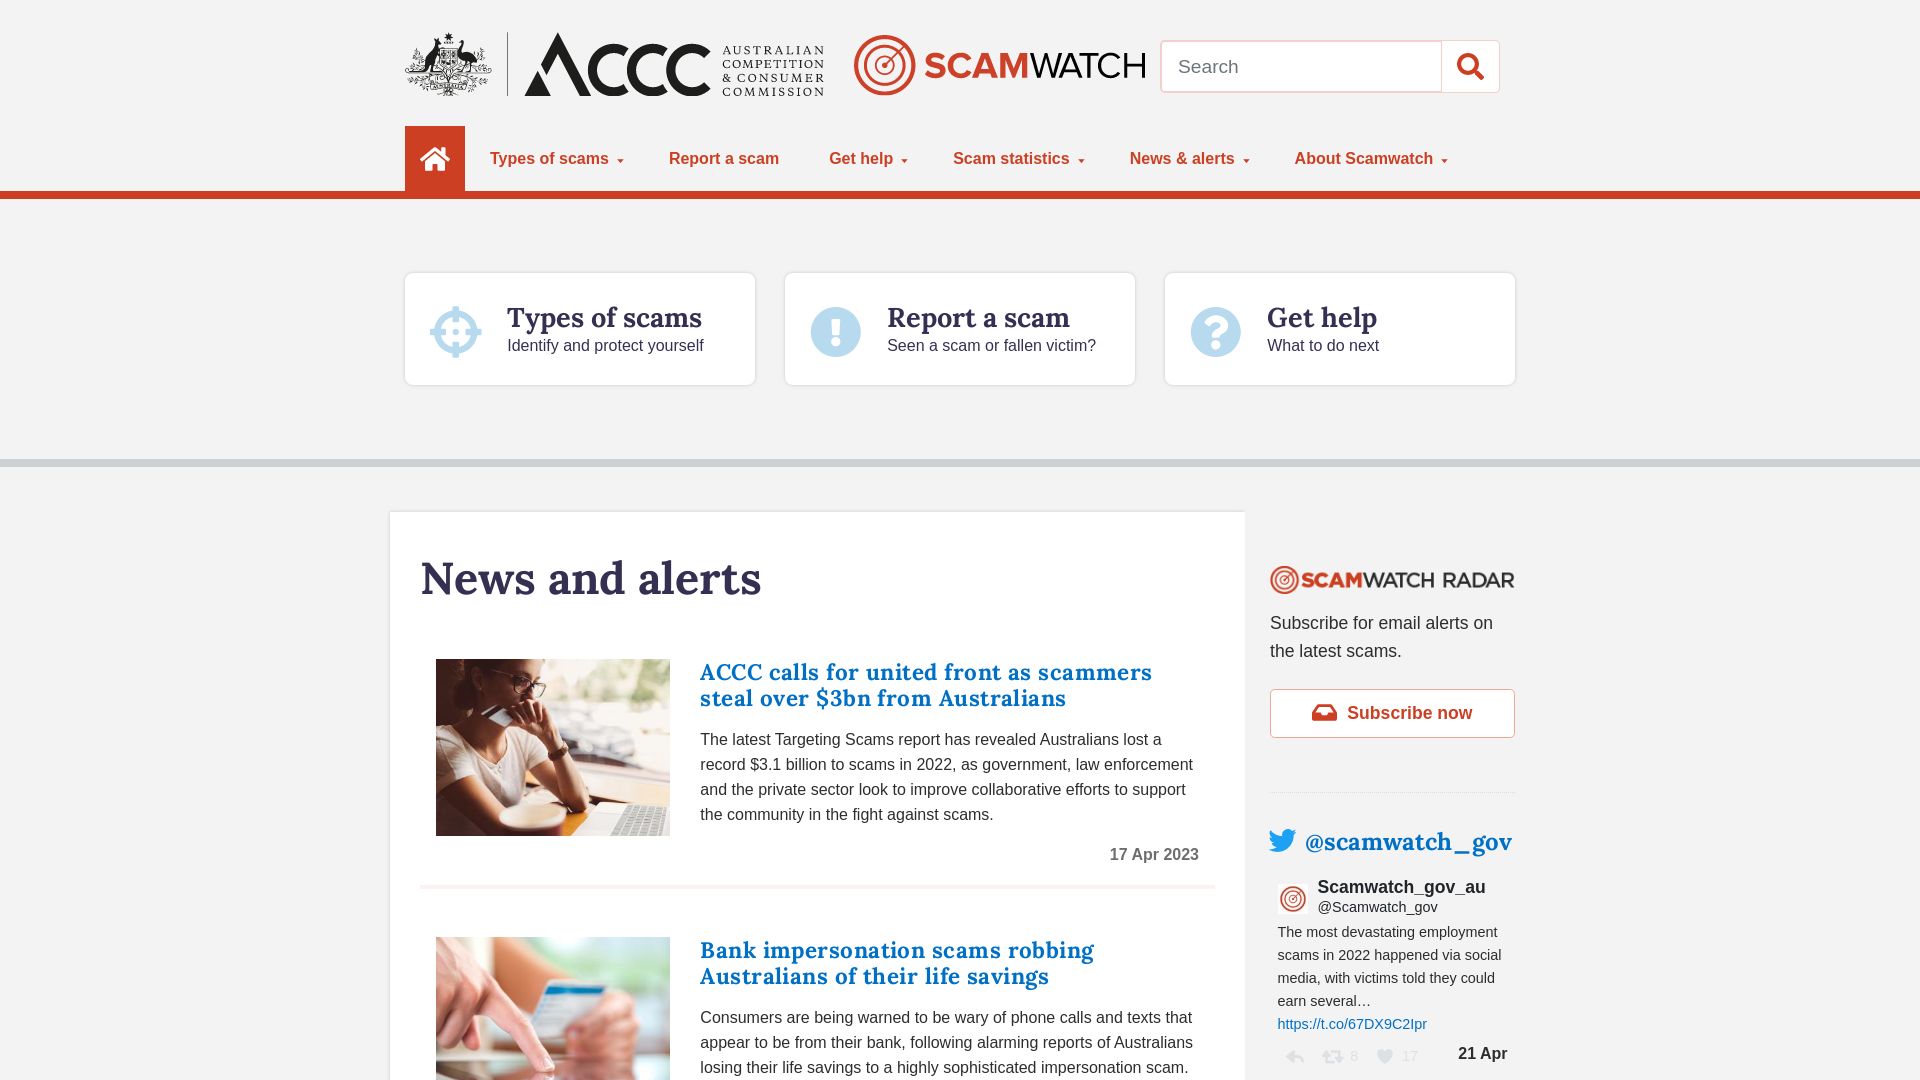 Estado web scamwatch.gov.au está   ONLINE